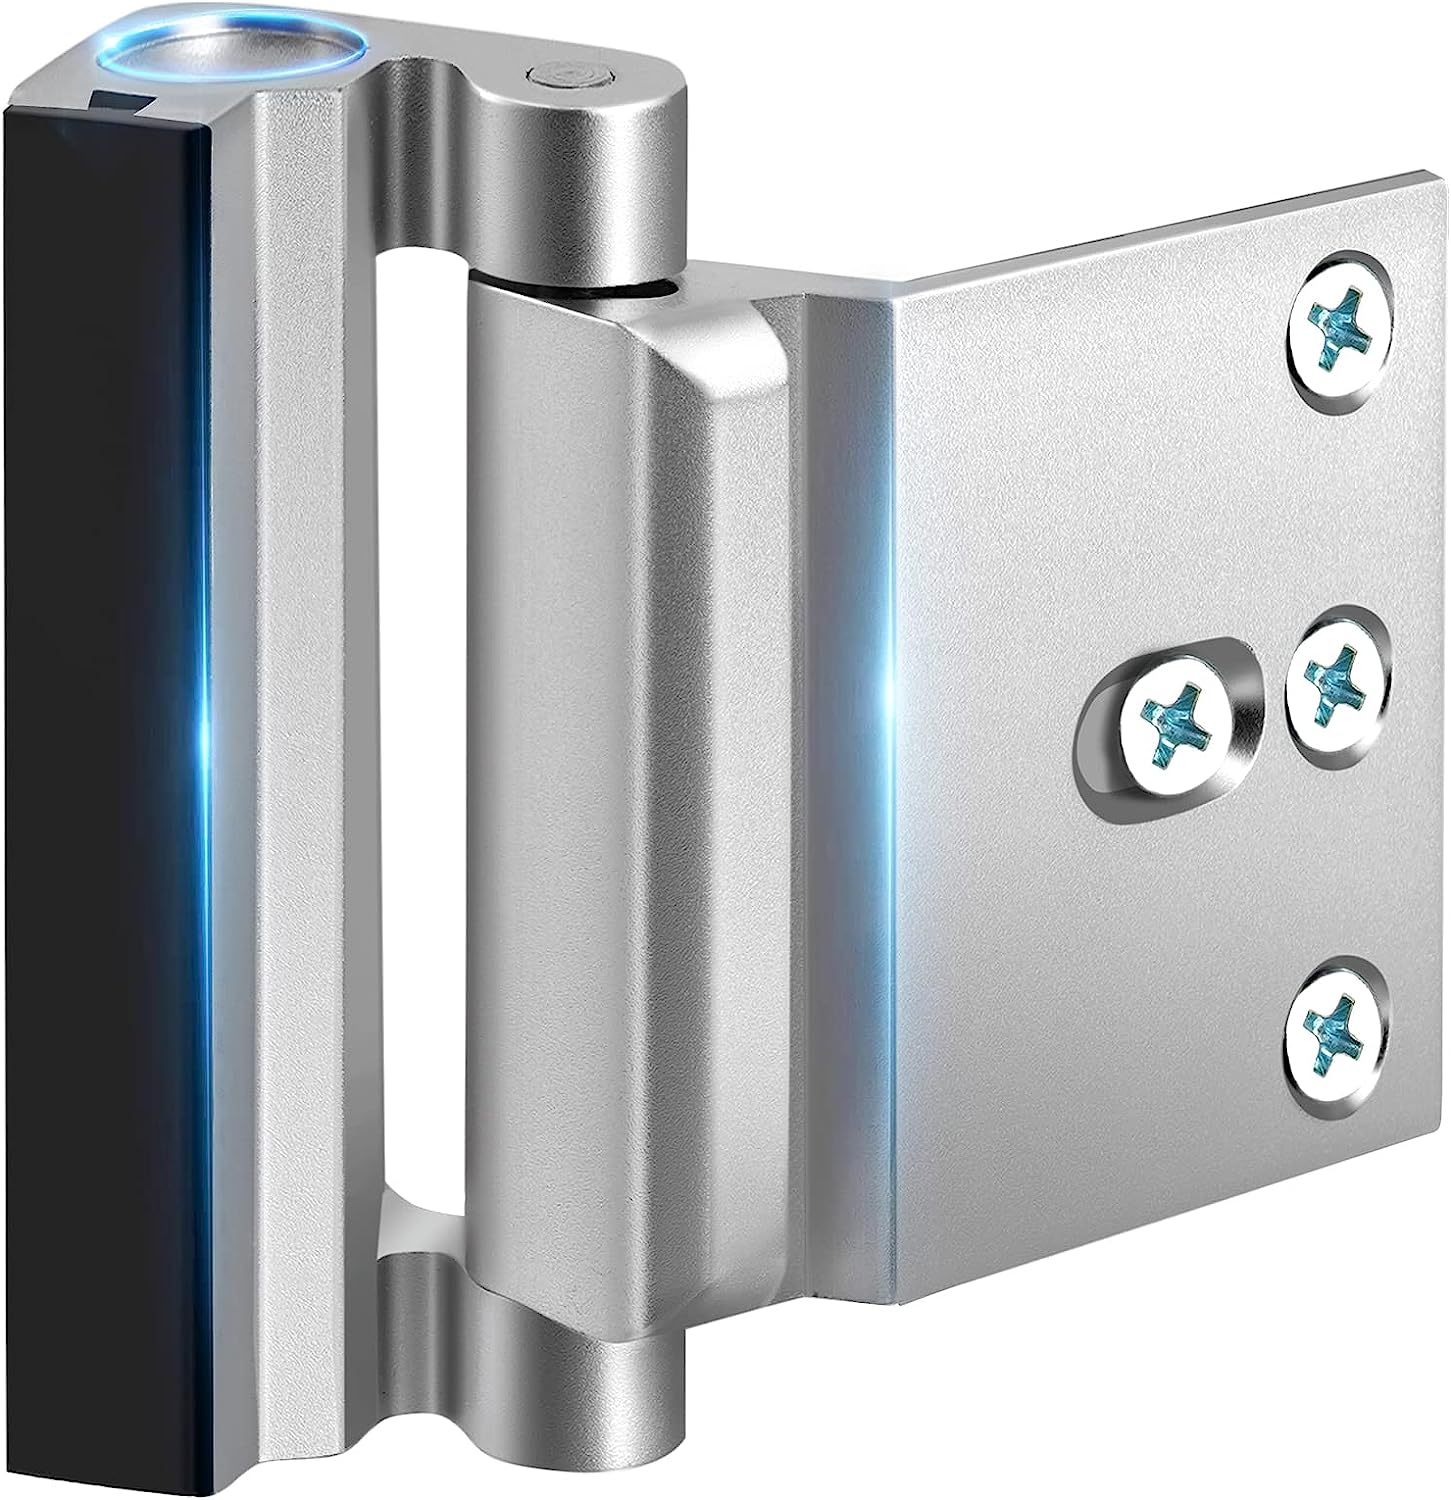 Home Security Door Reinforcement Lock - Upgraded [...]